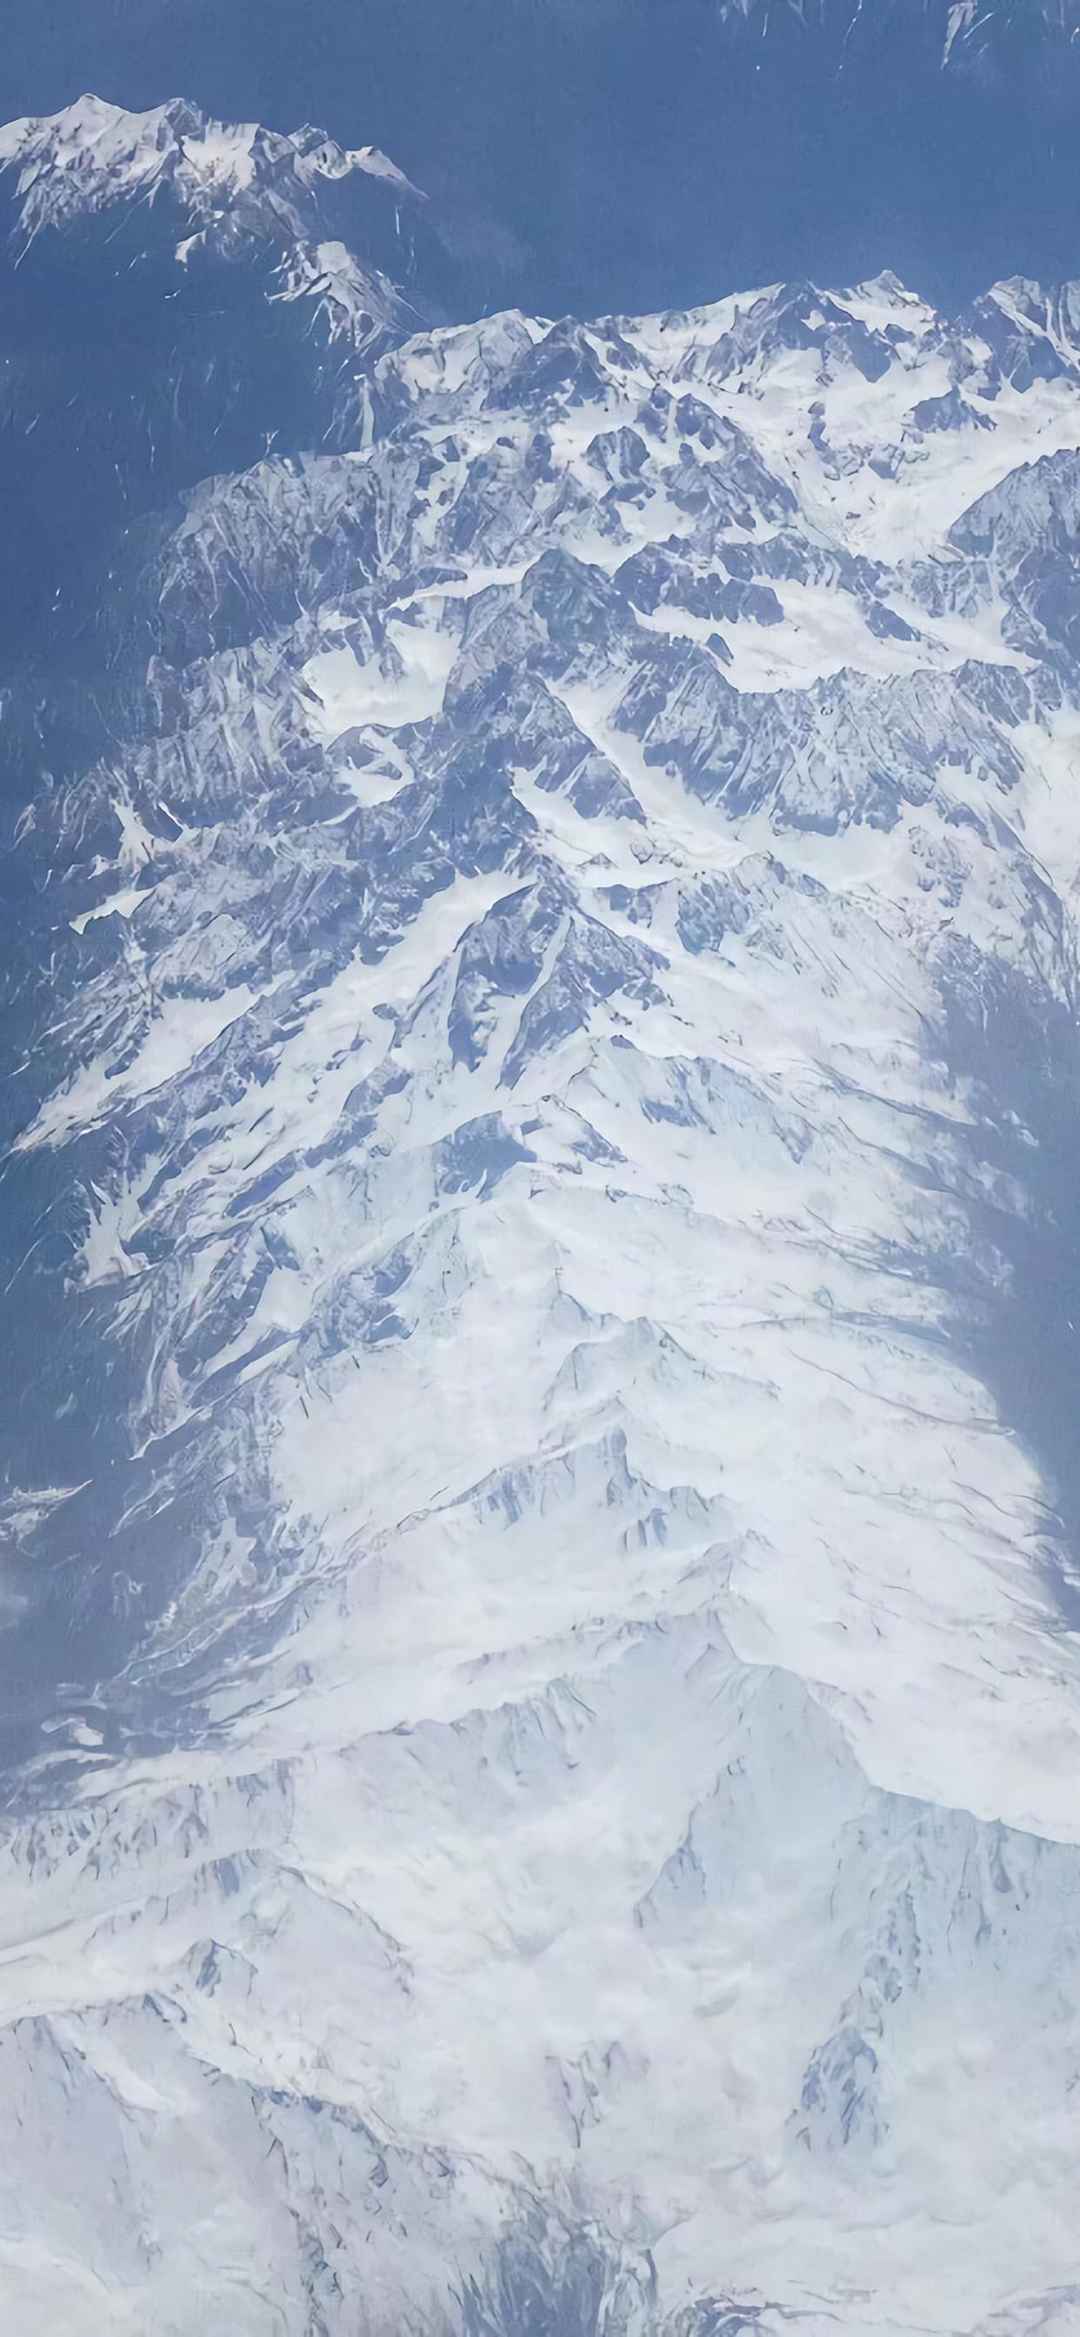 大气磅礴的唯美雪山风景手机壁纸套图1